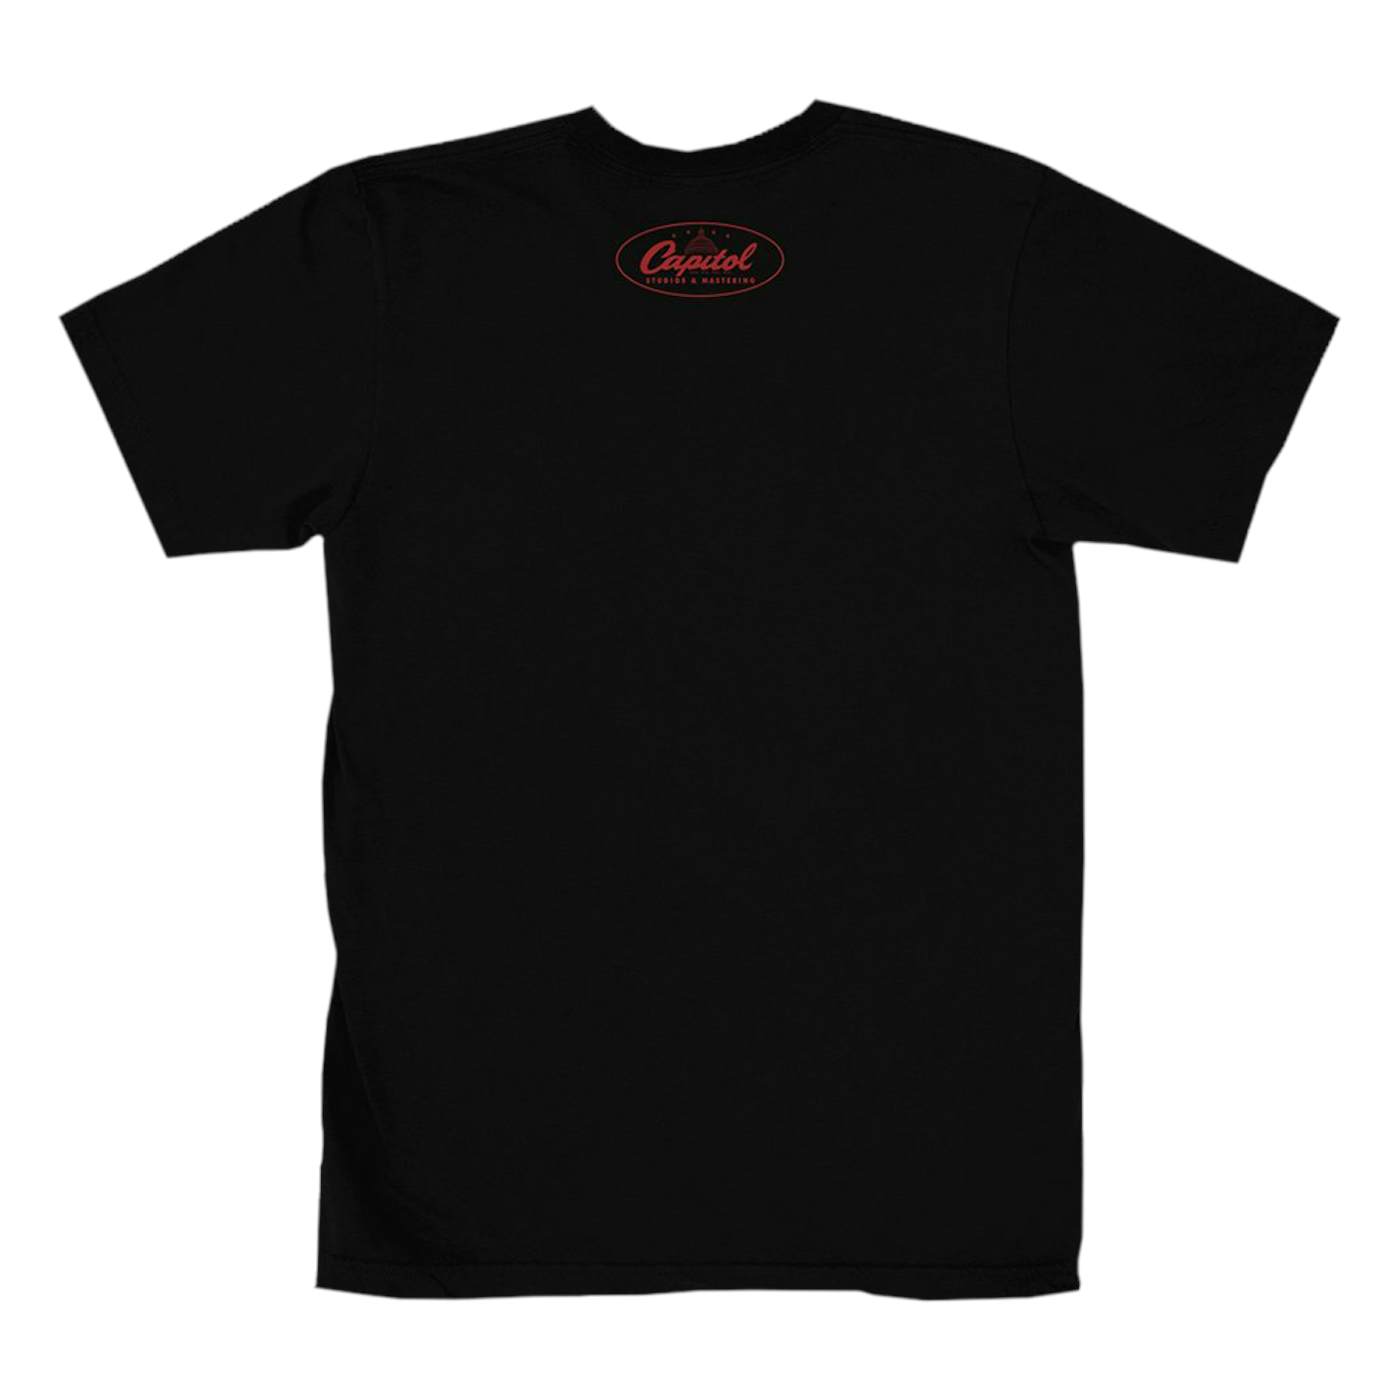 Capitol Records Capitol Studios Quiet Recording T-Shirt Black